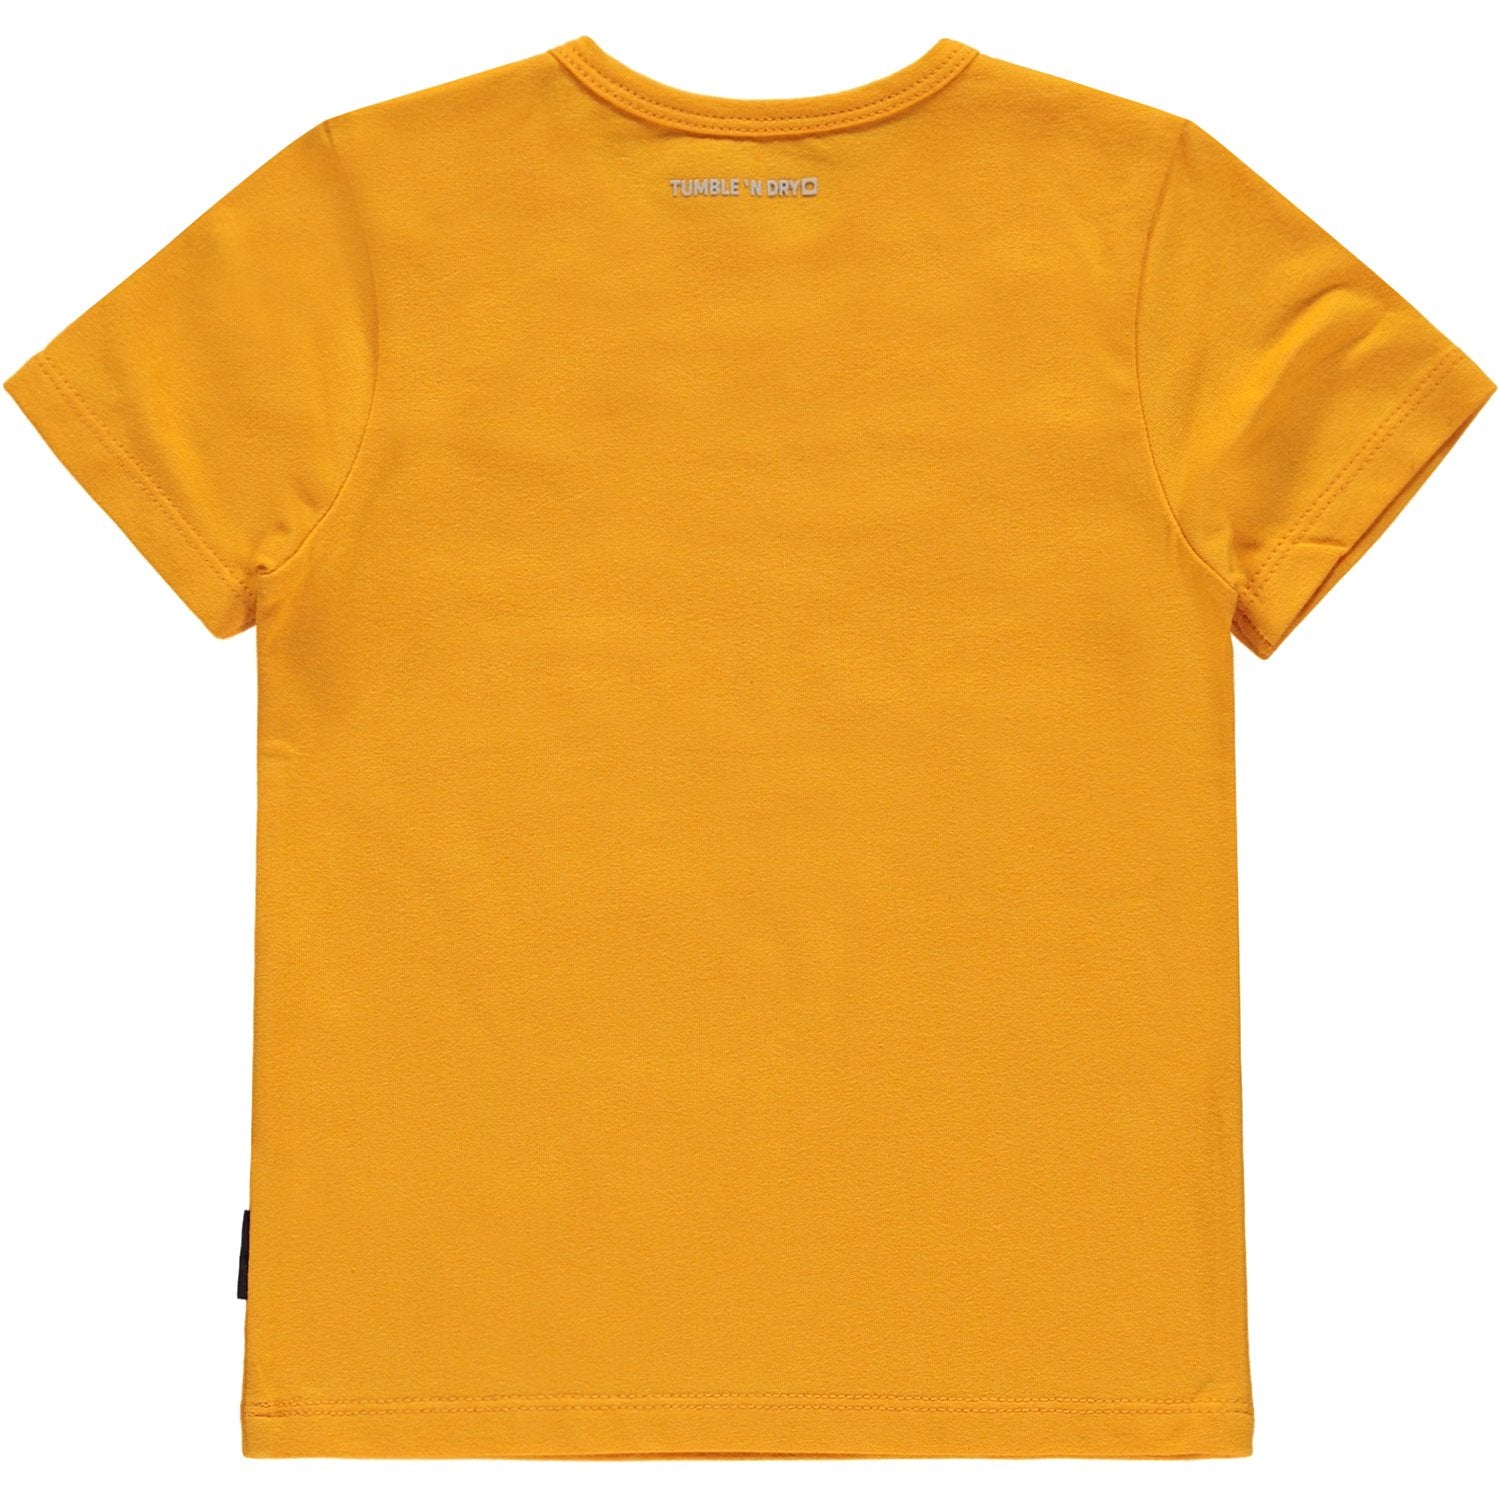 Baby Jongens T-shirt Km O-hals van Tumble 'n Dry in de kleur Limoges in maat 86.